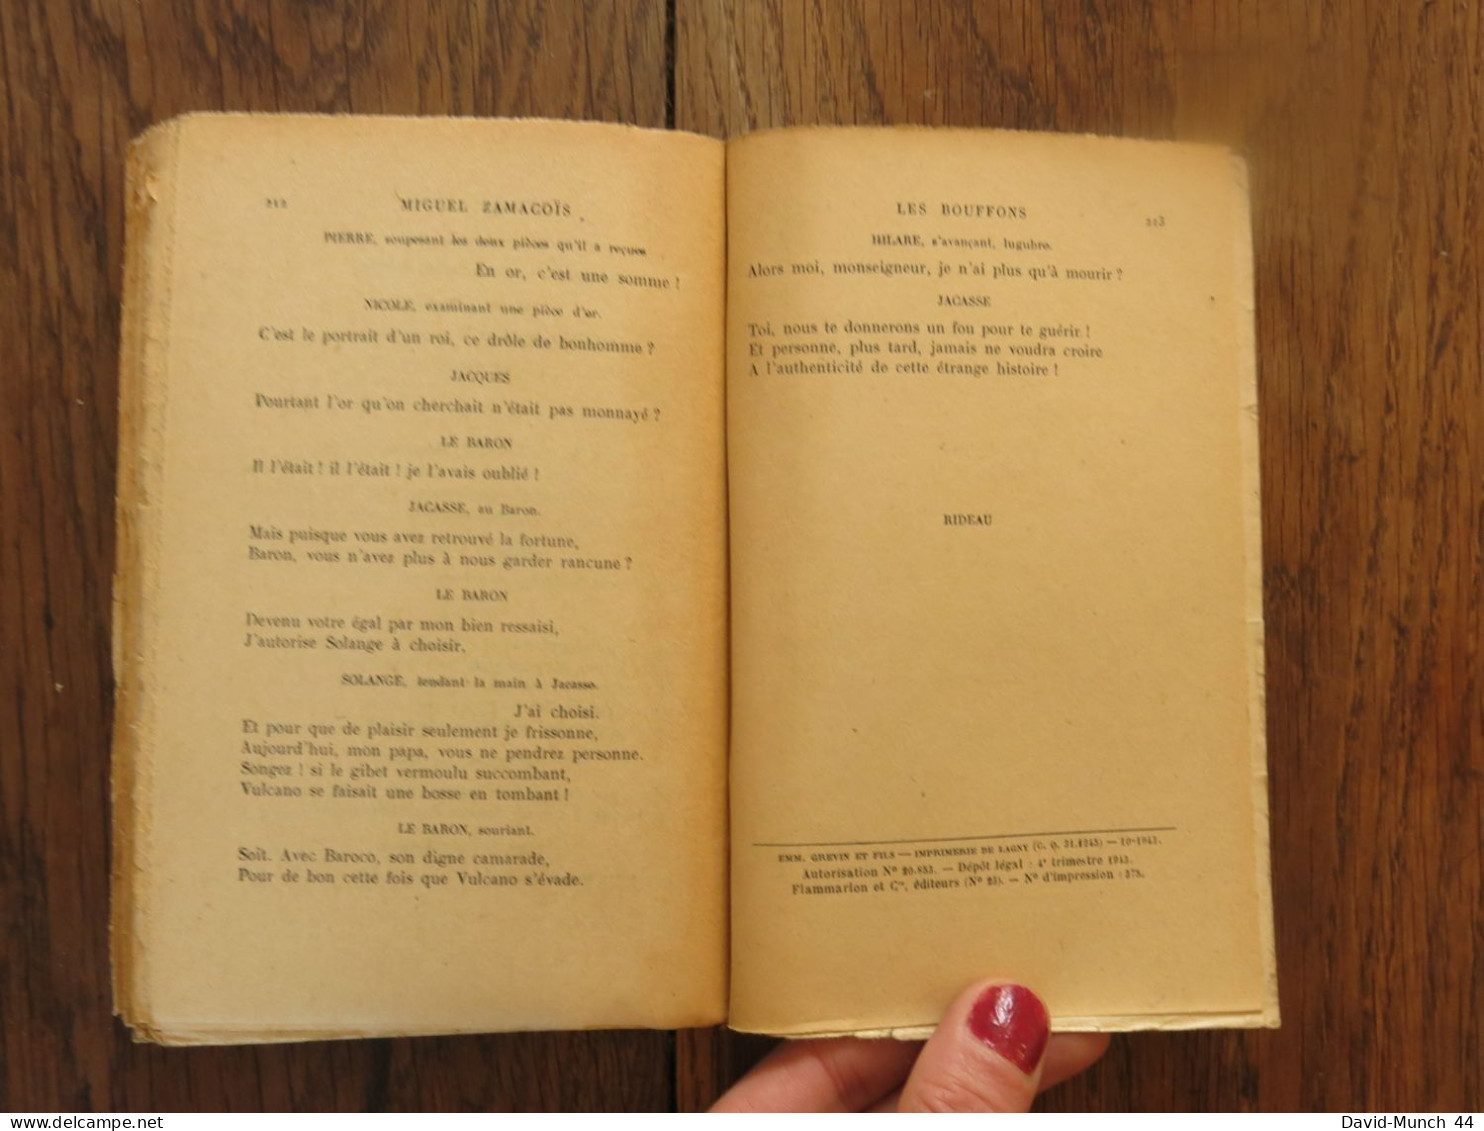 Les bouffons, Pièce en quatre actes en vers de Miguel Zamacois. Ernest Flammarion, éditeur. 1943